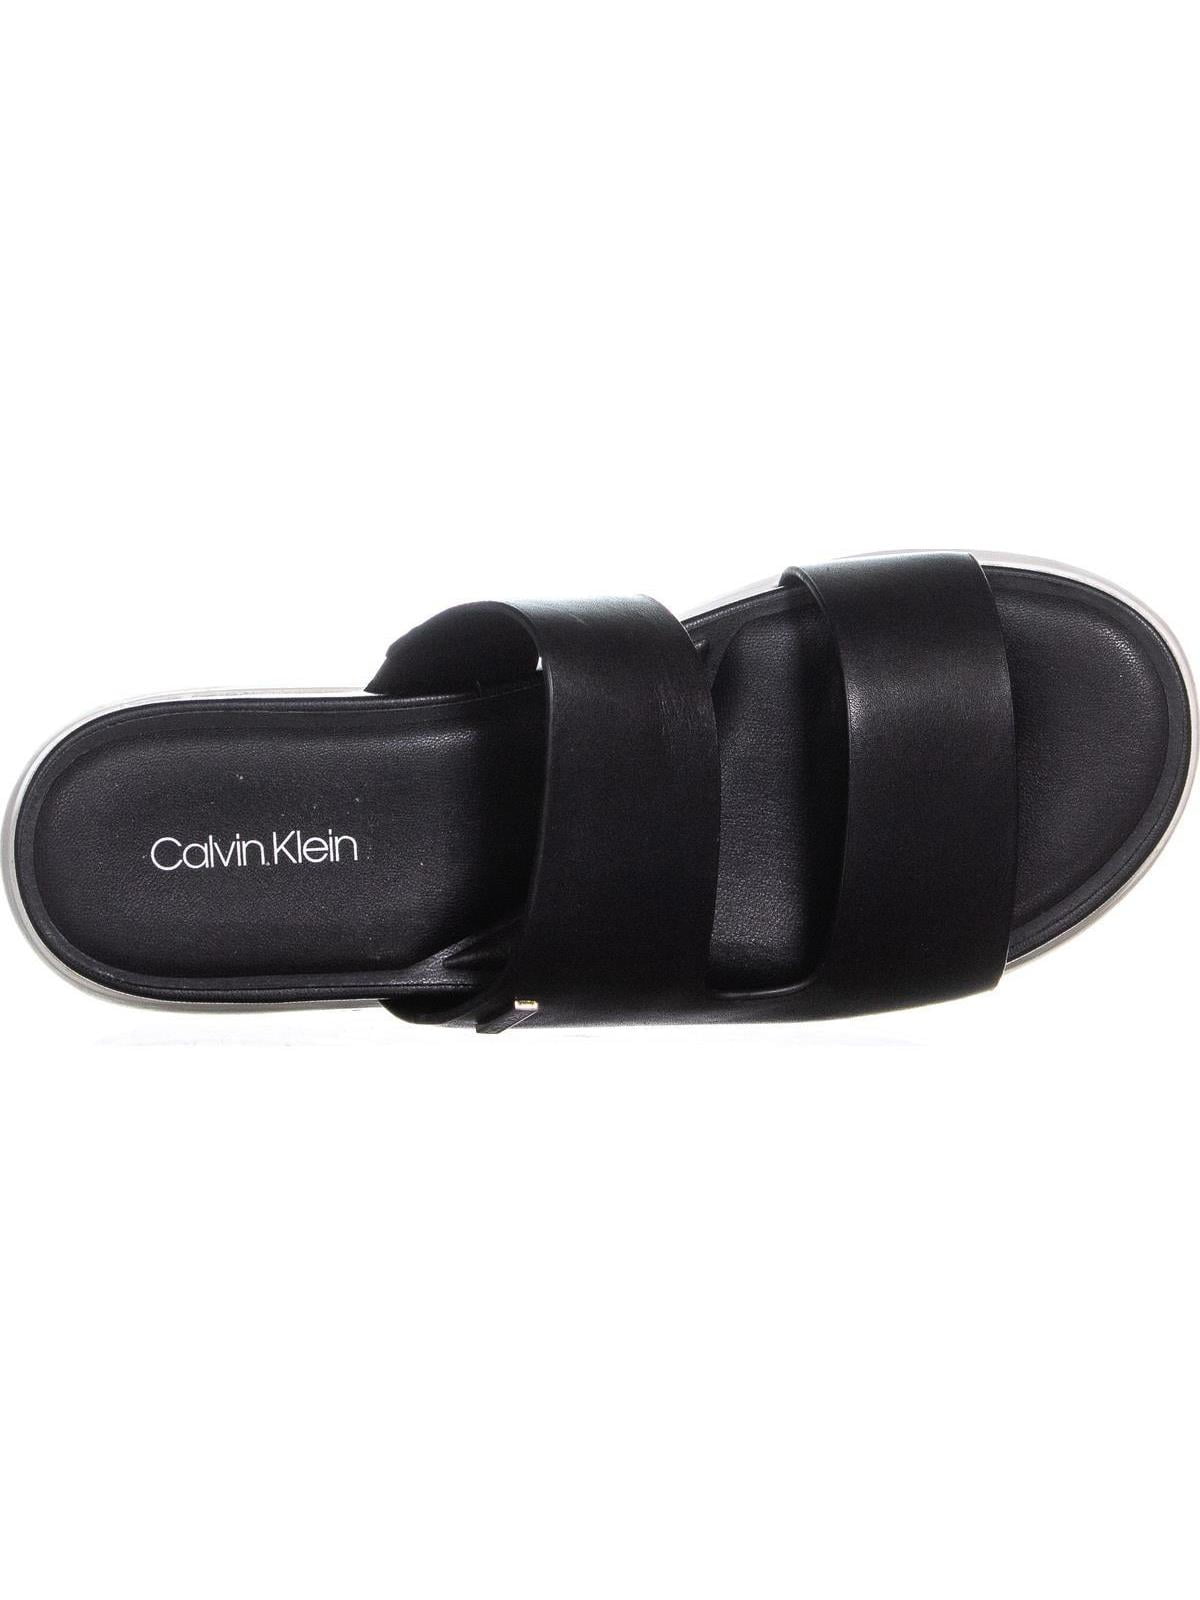 calvin klein sandals canada